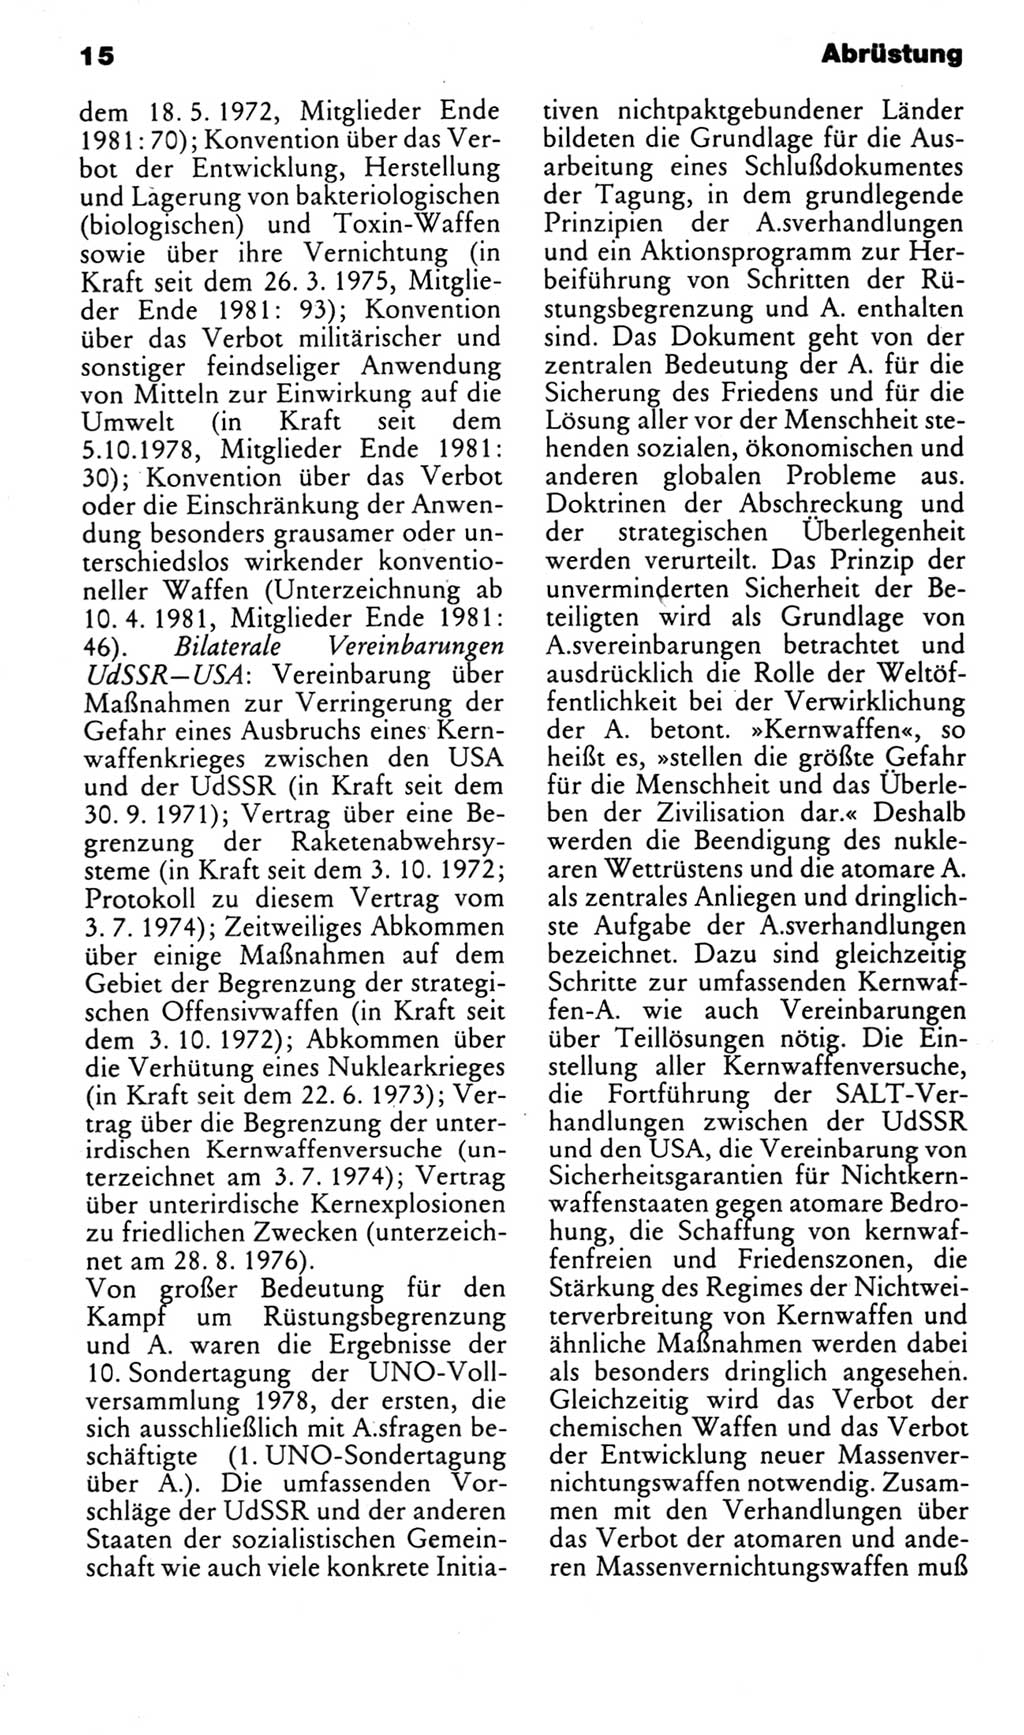 Kleines politisches Wörterbuch [Deutsche Demokratische Republik (DDR)] 1983, Seite 15 (Kl. pol. Wb. DDR 1983, S. 15)